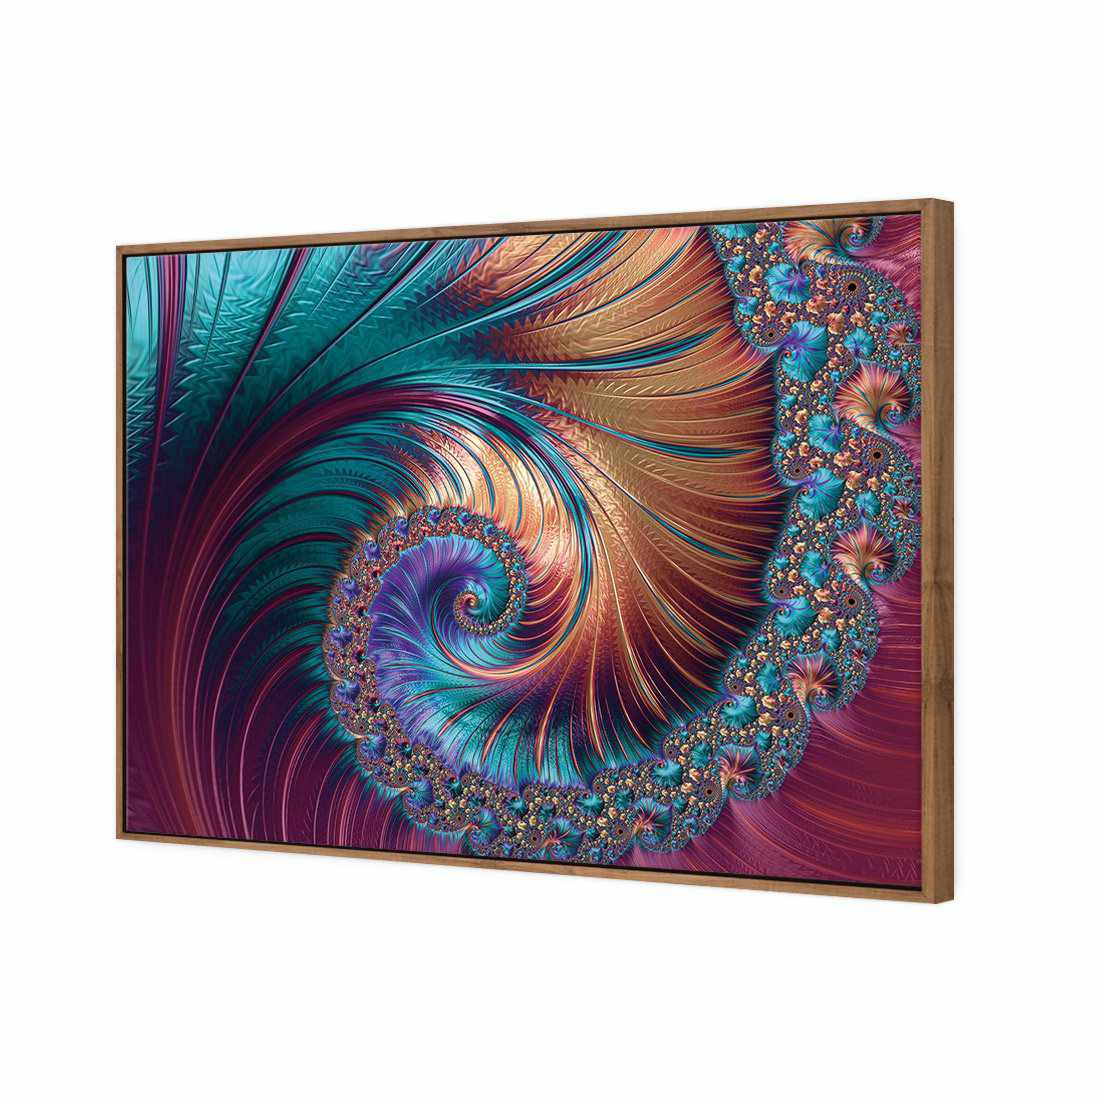 Luxe Spiral Canvas Art-Canvas-Wall Art Designs-45x30cm-Canvas - Natural Frame-Wall Art Designs